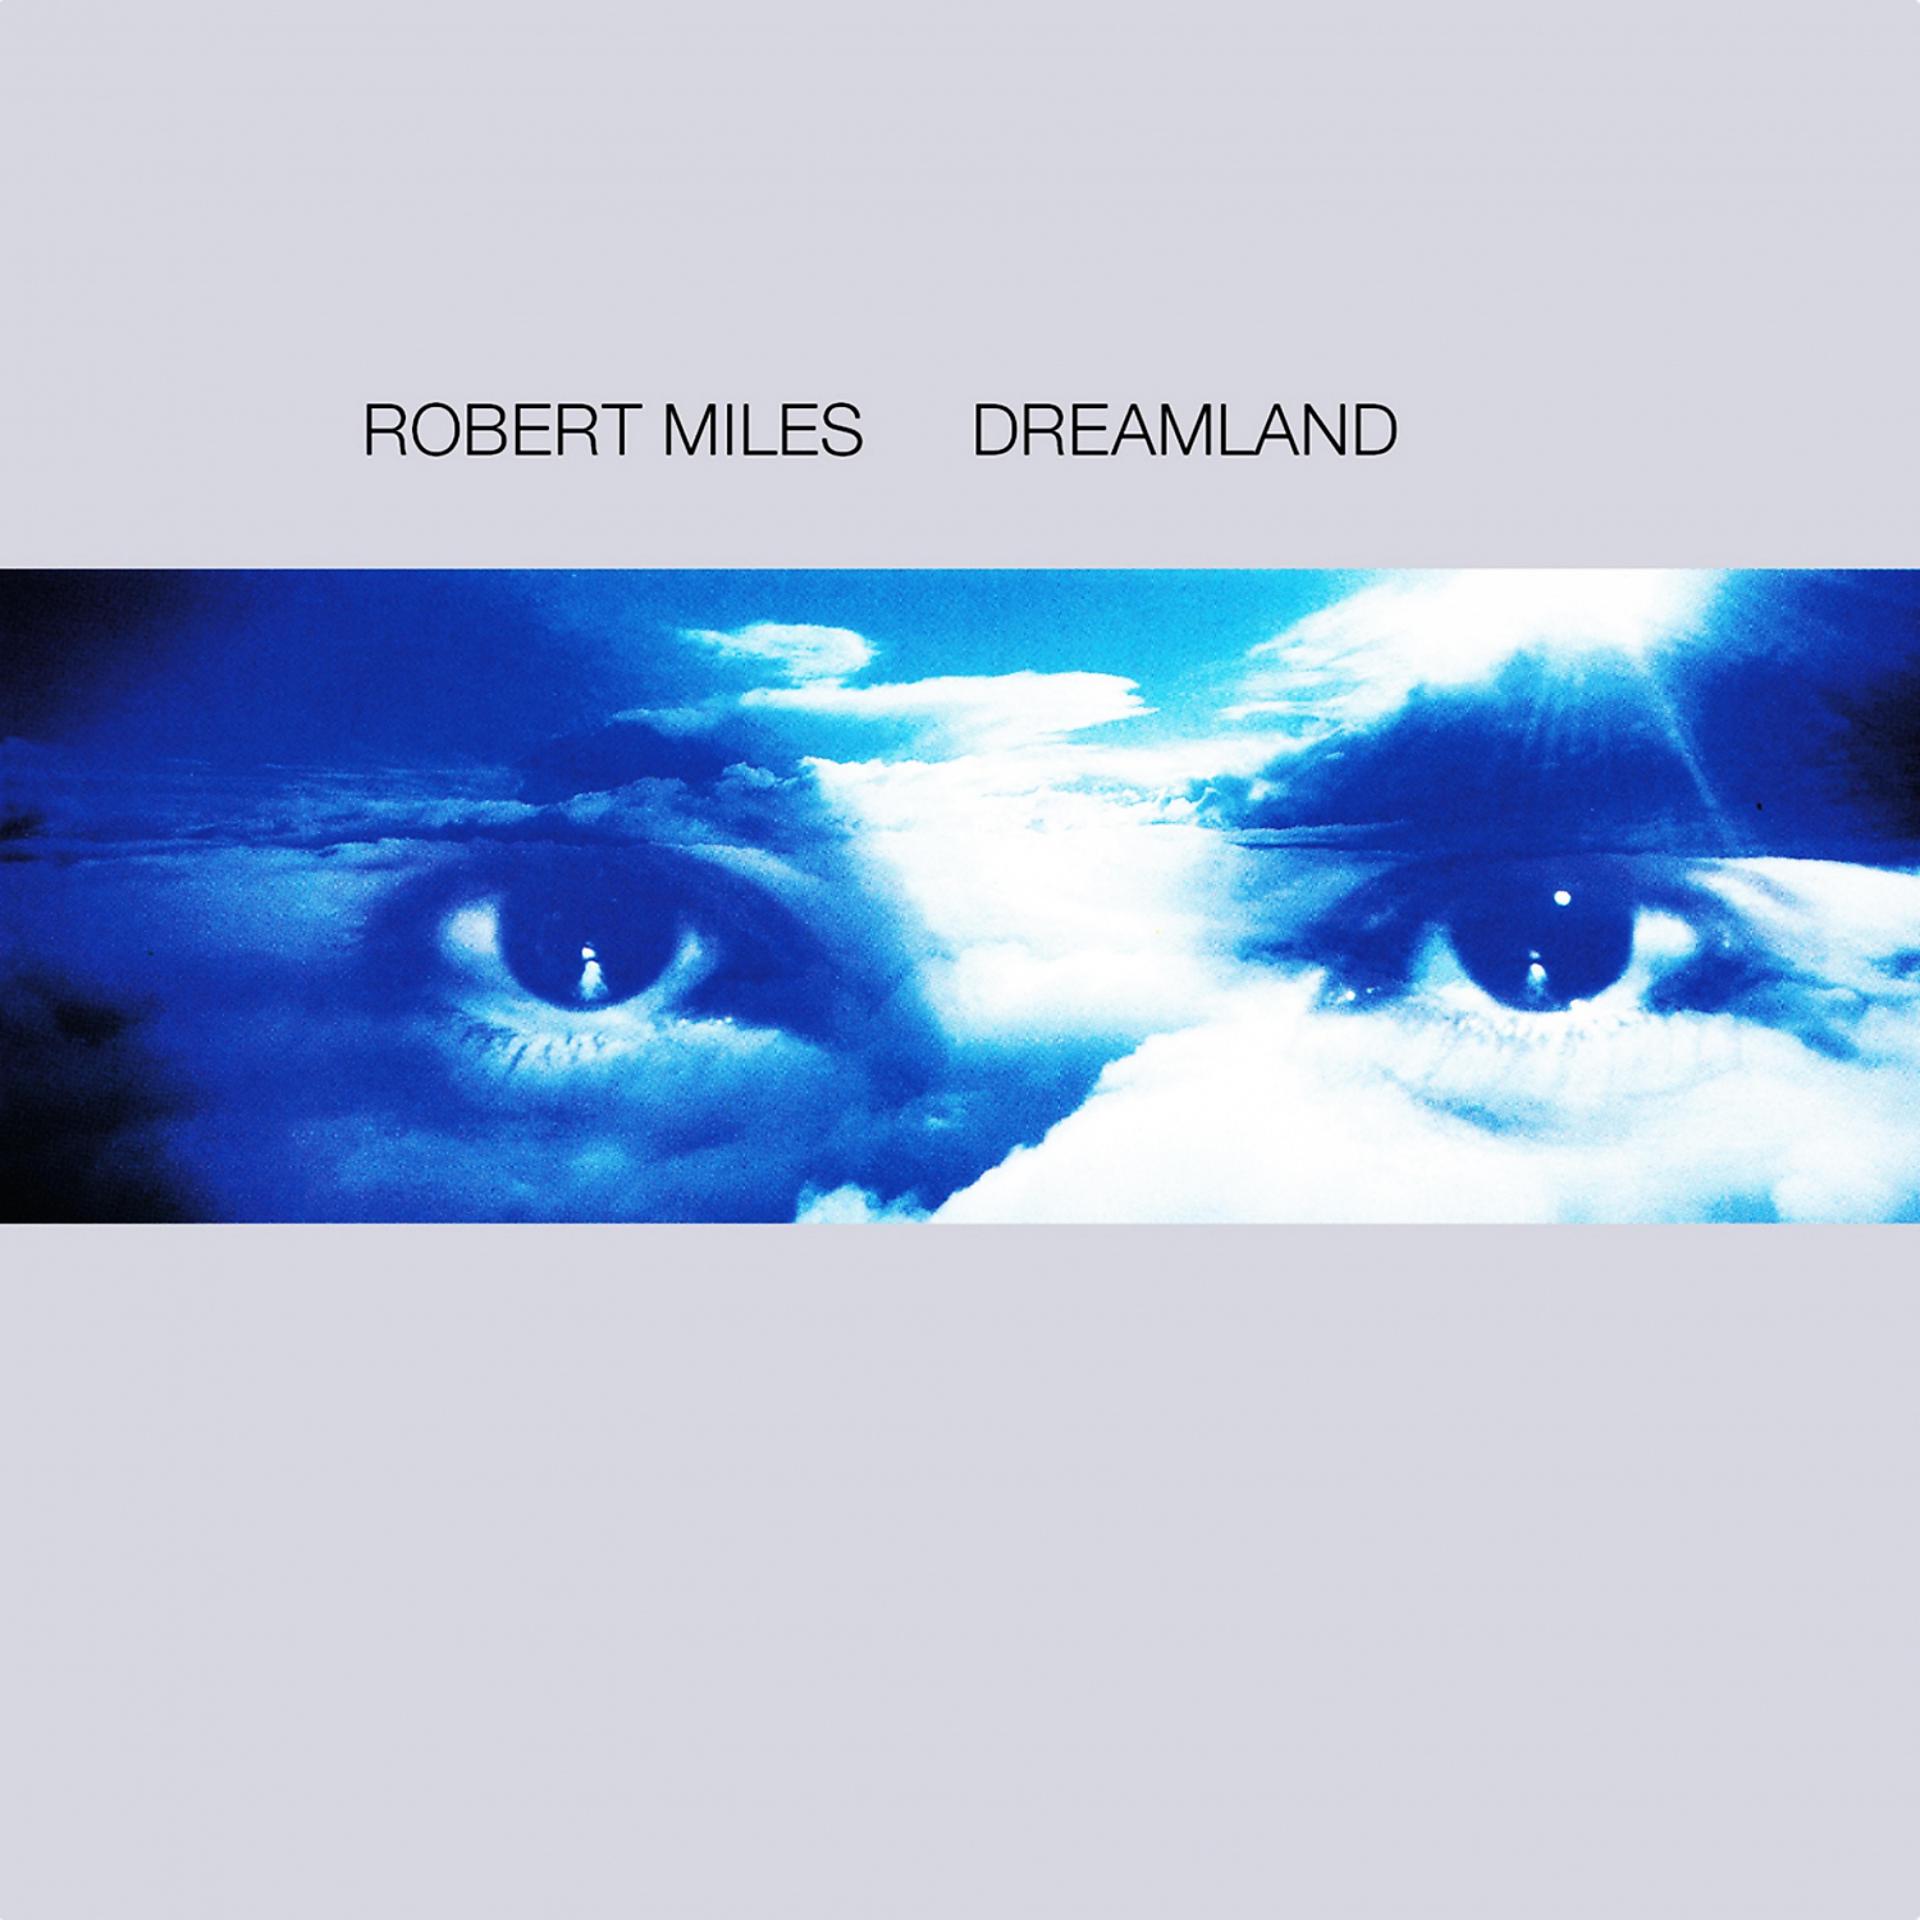 Robert miles dreaming. Robert Miles children 1996. Robert Miles Dreamland 1996. Robert Miles - Dreamland (1996) компакт диск.